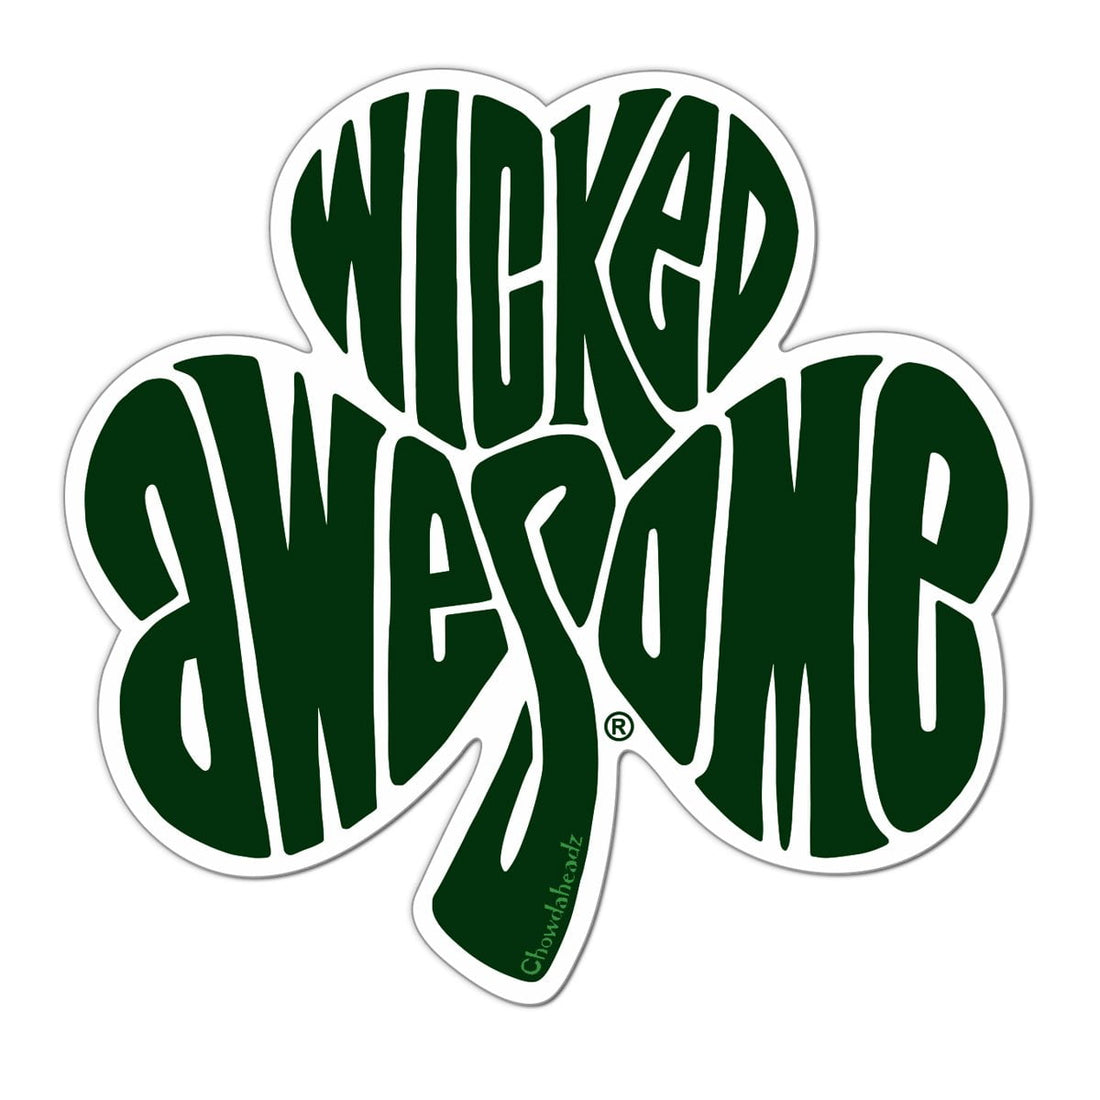 Wicked Awesome Shamrock Sticker - Chowdaheadz